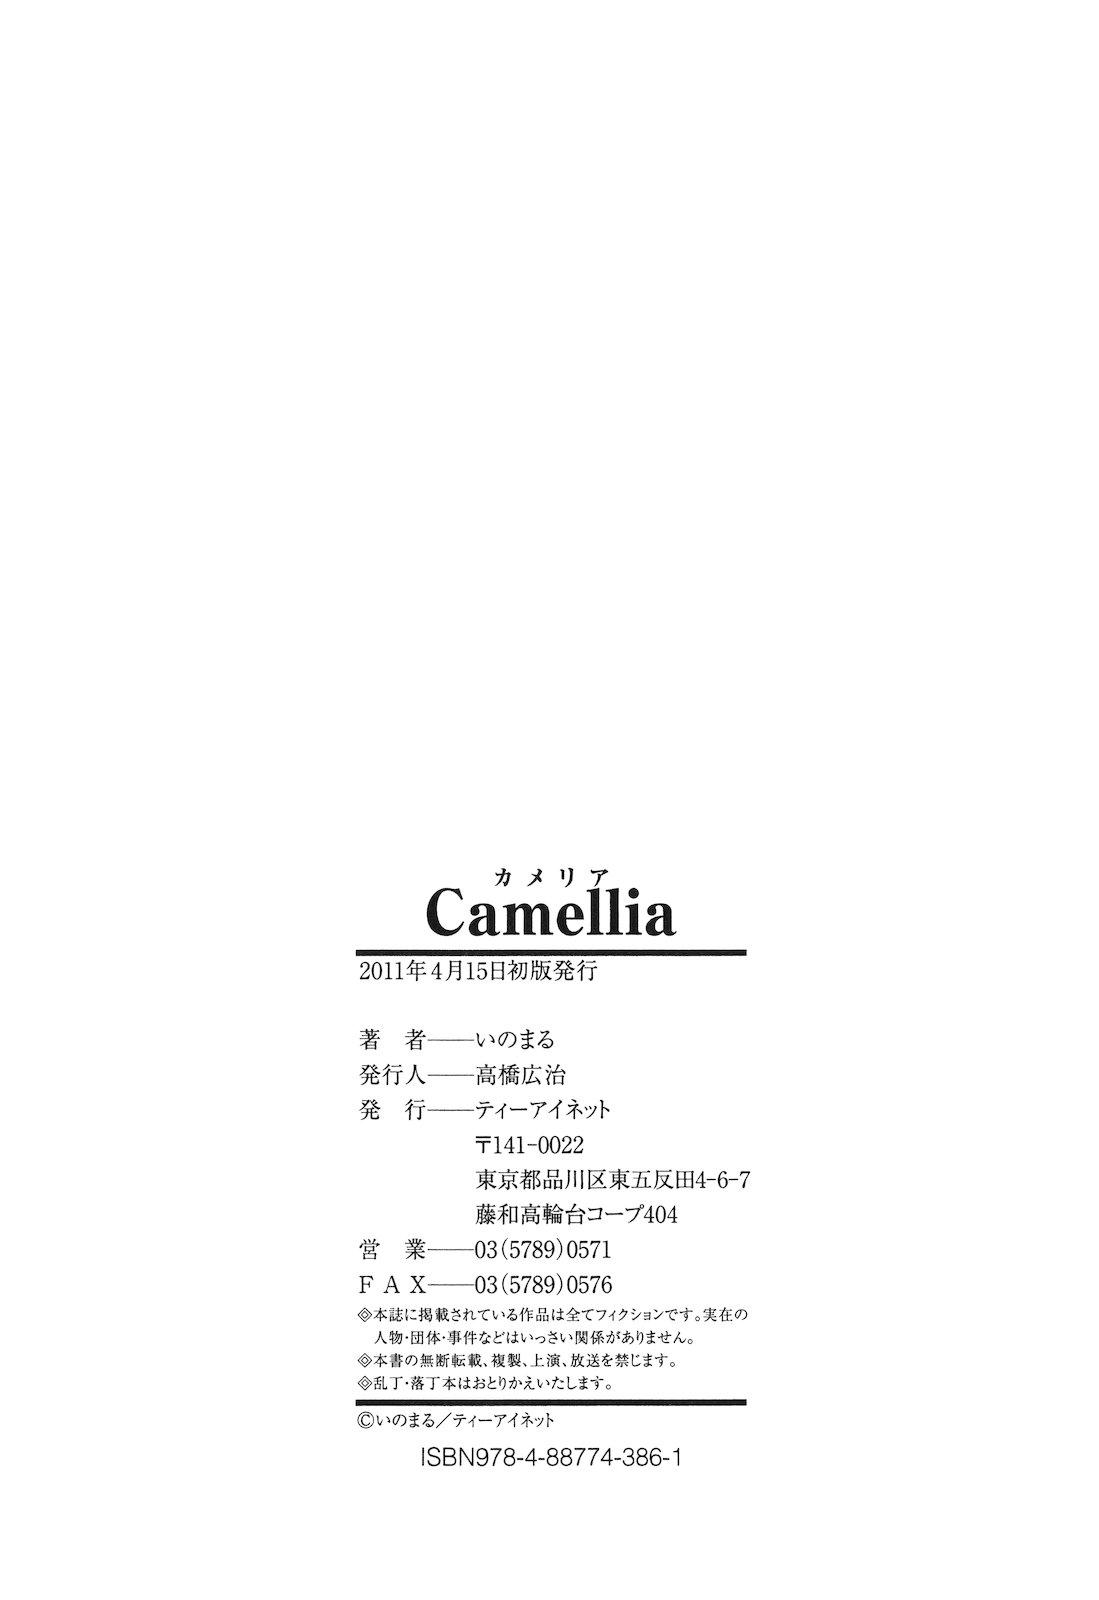 Camellia 224